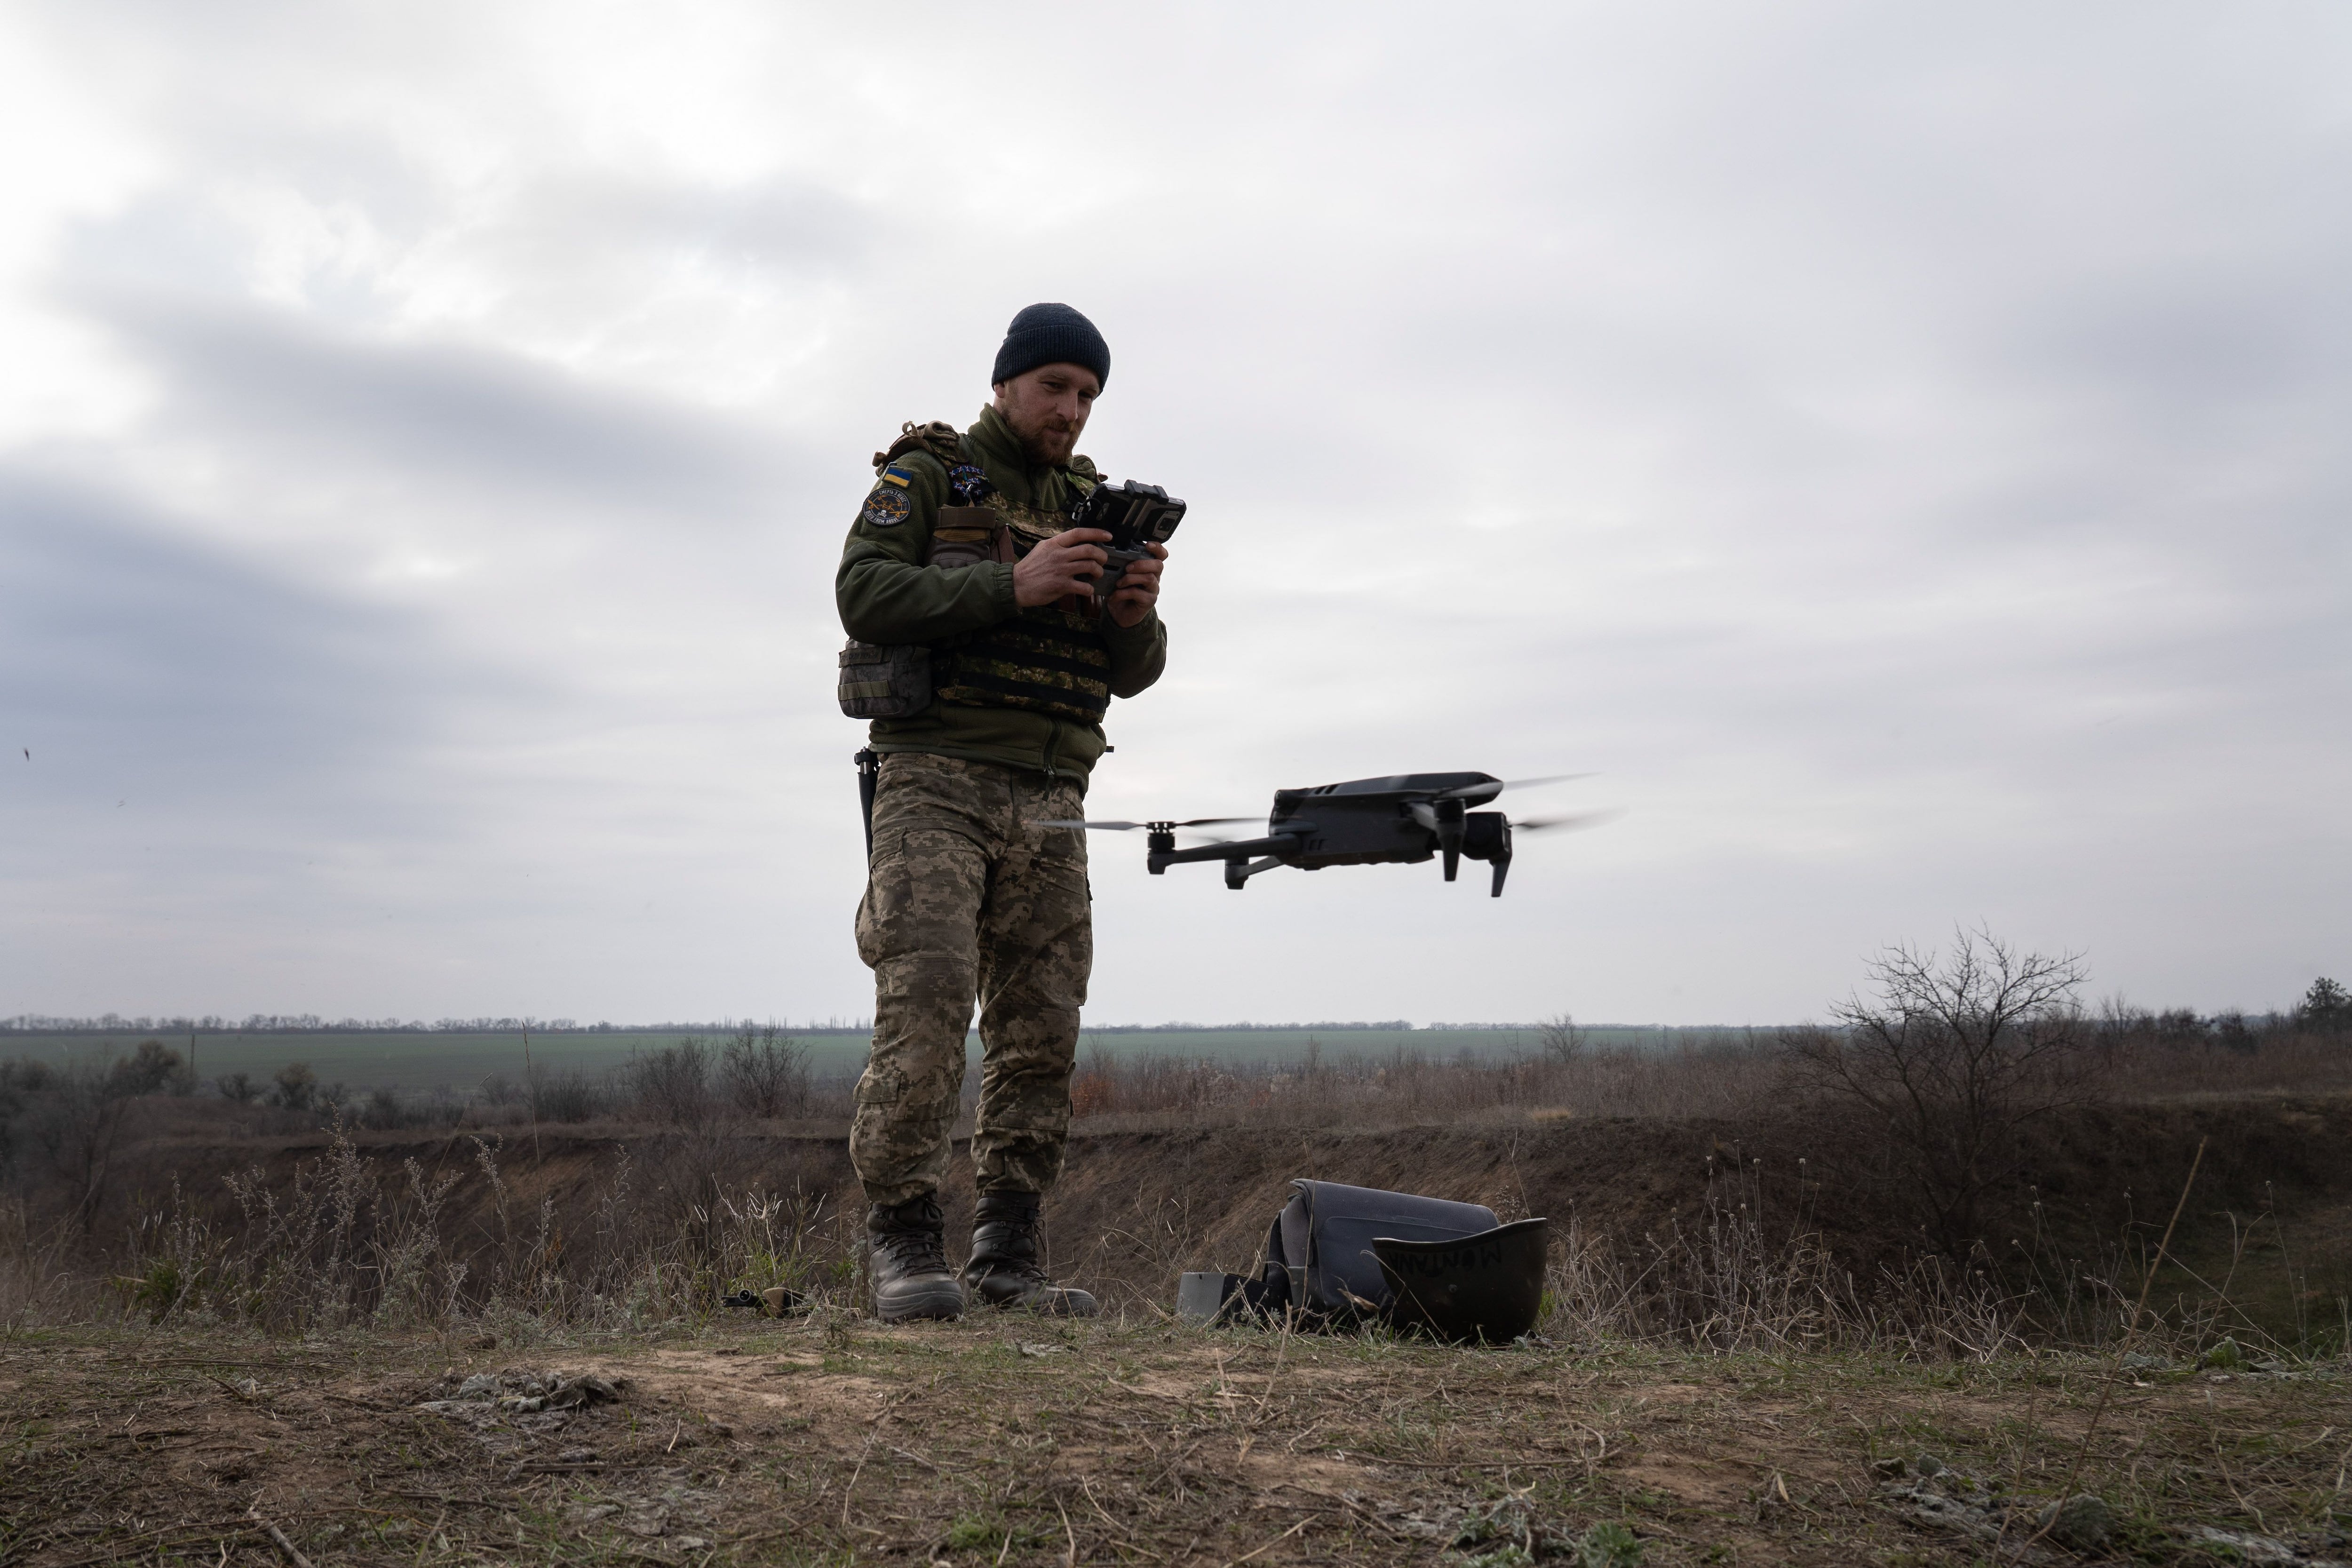 09/11/2022 Un militar de Ucrania durante una práctica con drones
POLITICA INTERNACIONAL
Ashley Chan/SOPA Images via ZUMA / DPA
